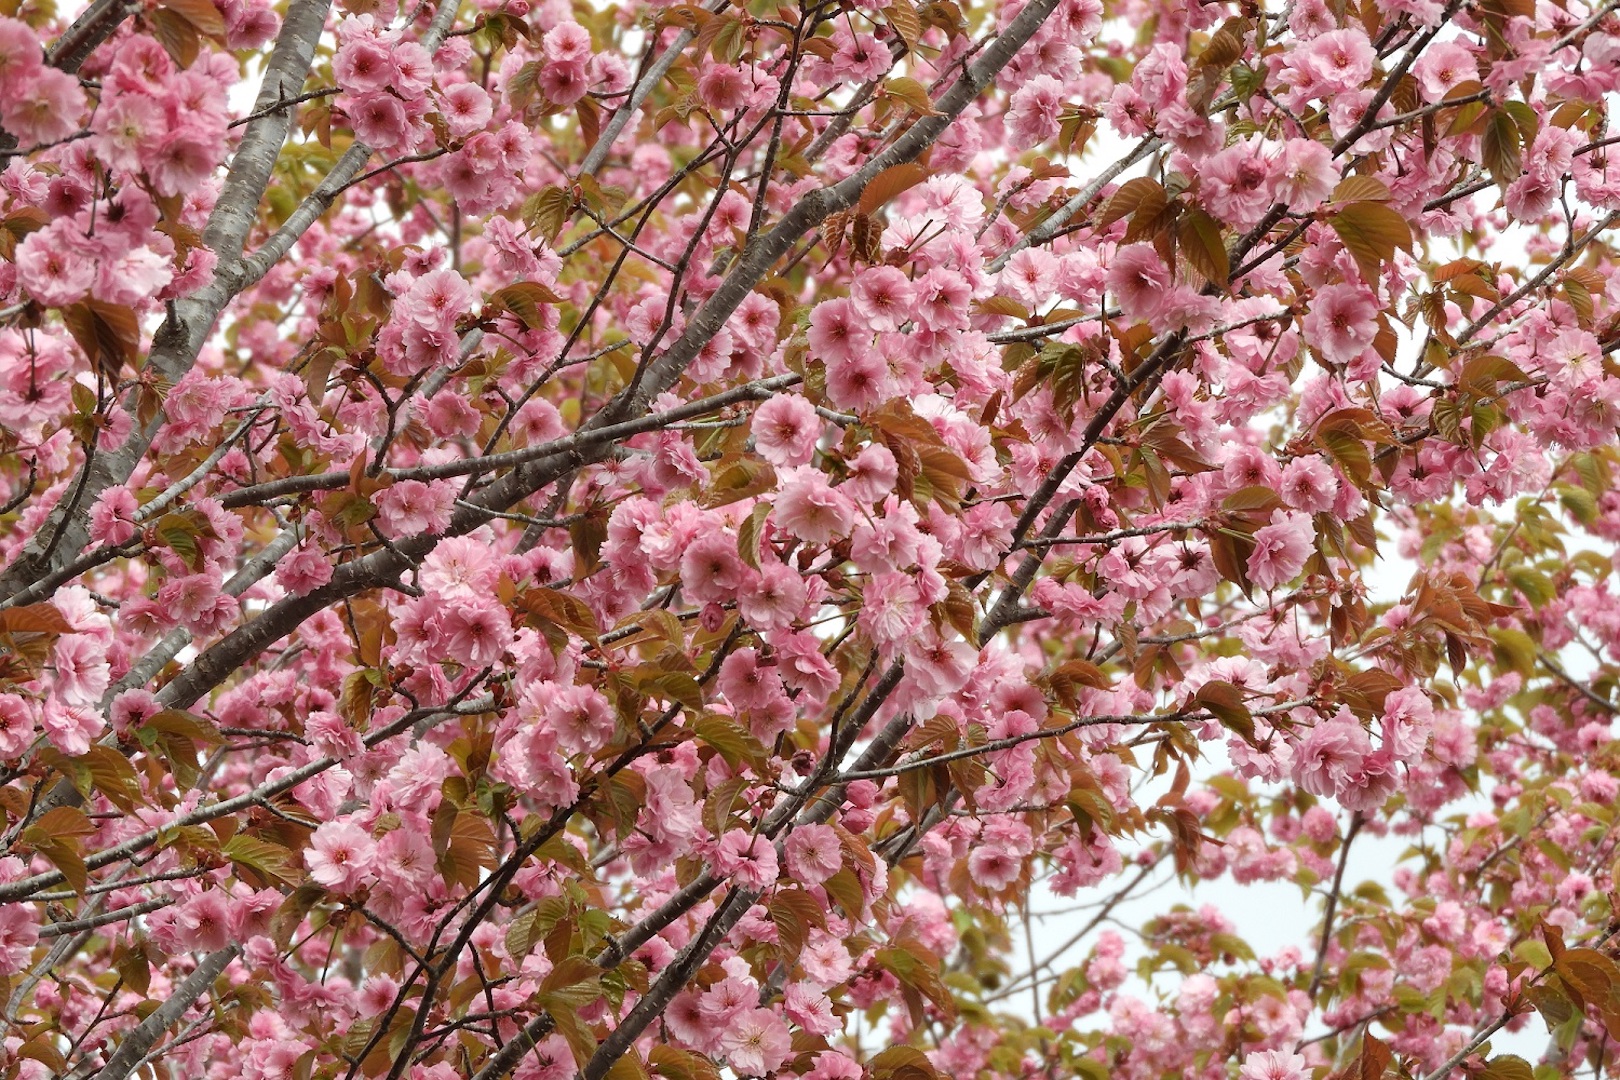 園内の桜